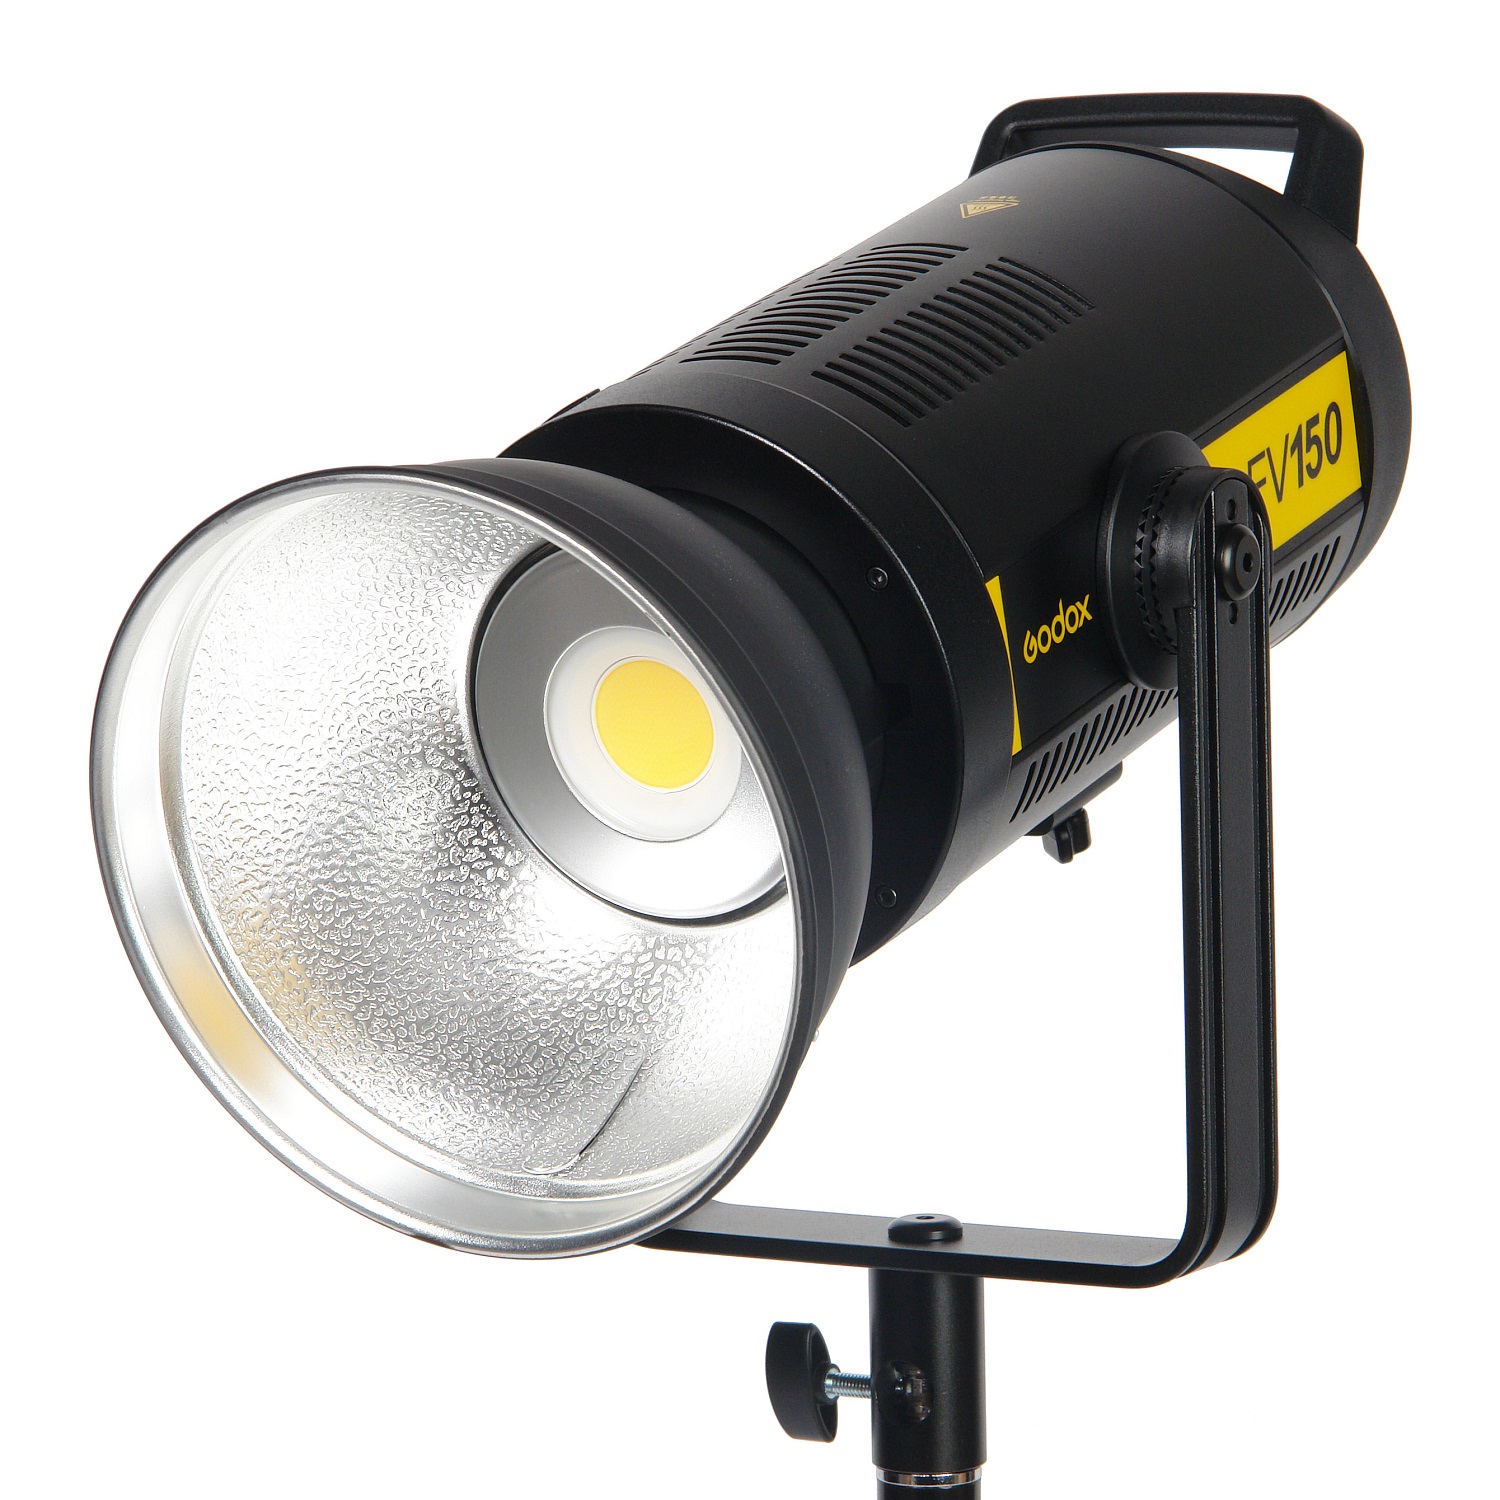 Осветитель светодиодный Godox FV150 с функцией вспышки кольцевой осветитель godox lr160 8000 кв